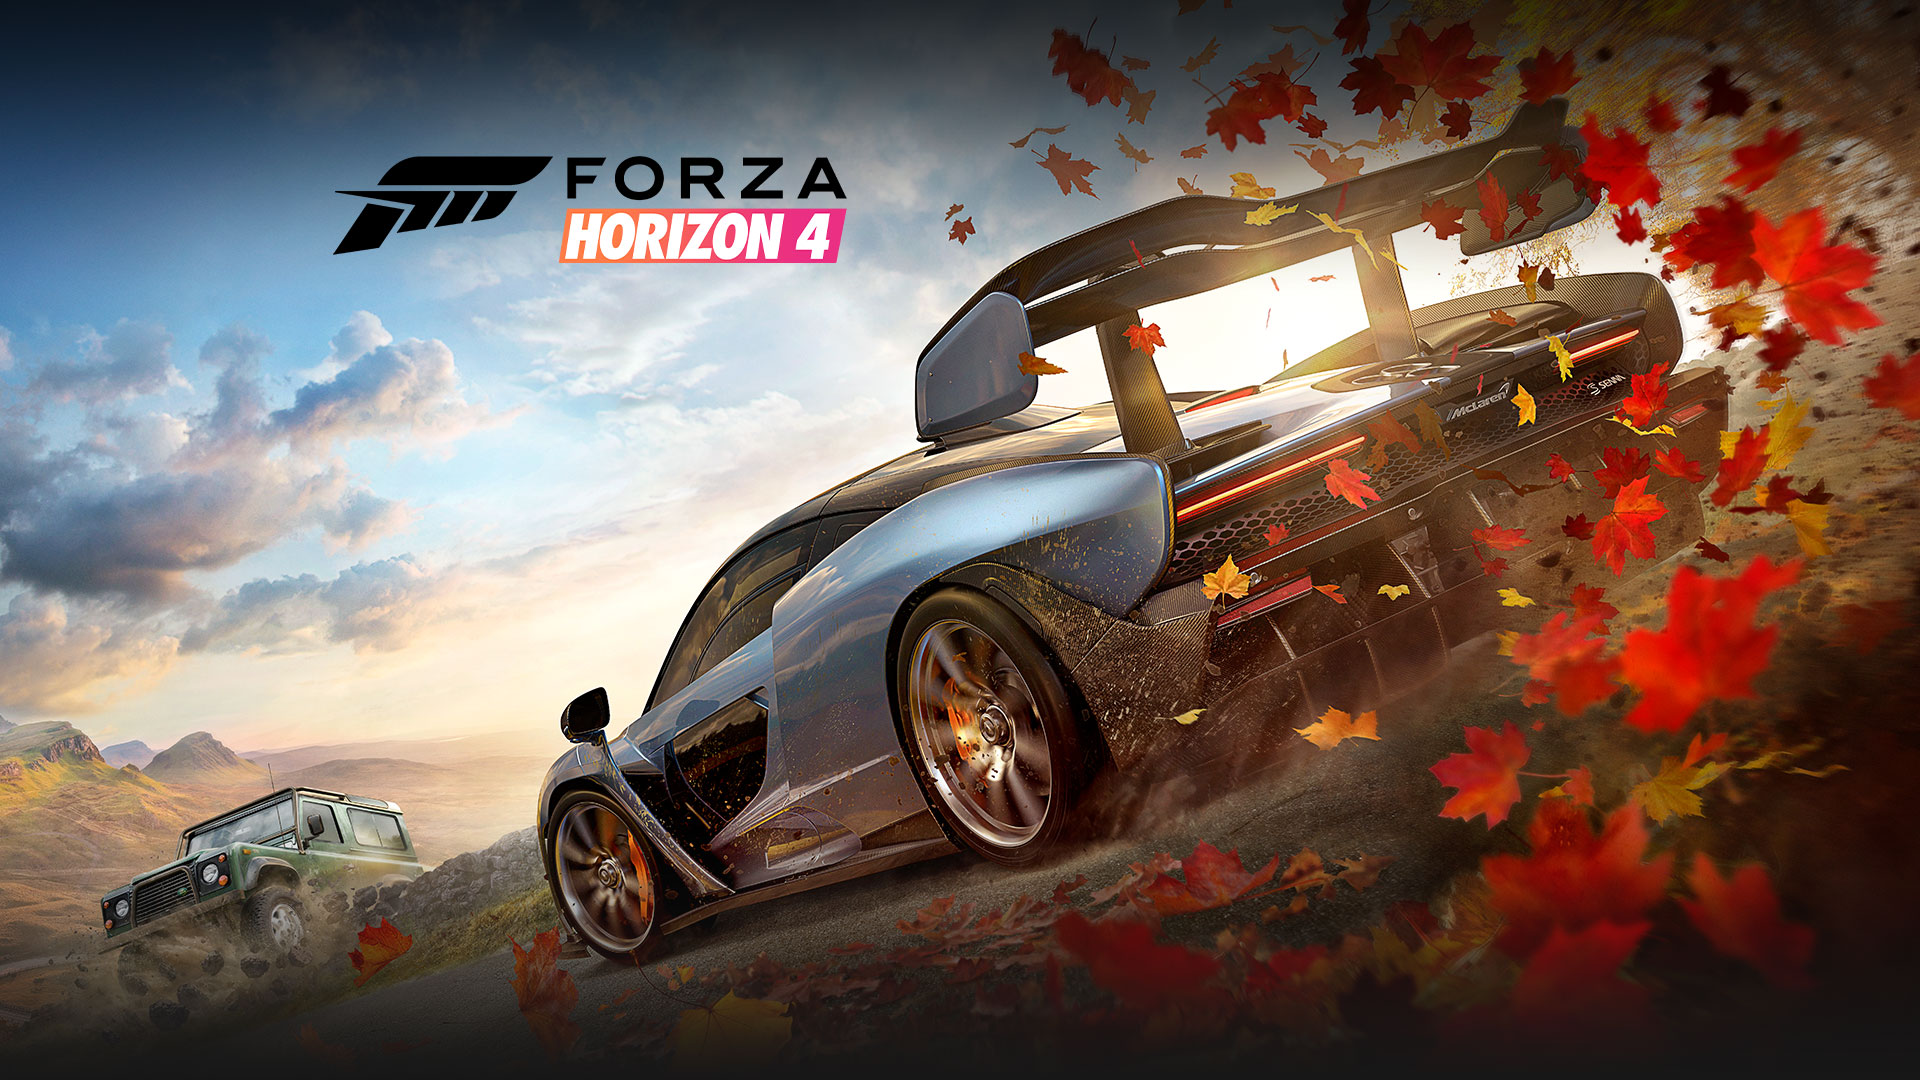 Forza Horizon 4: dos autos, uno de los cuales levanta hojas del suelo a su paso